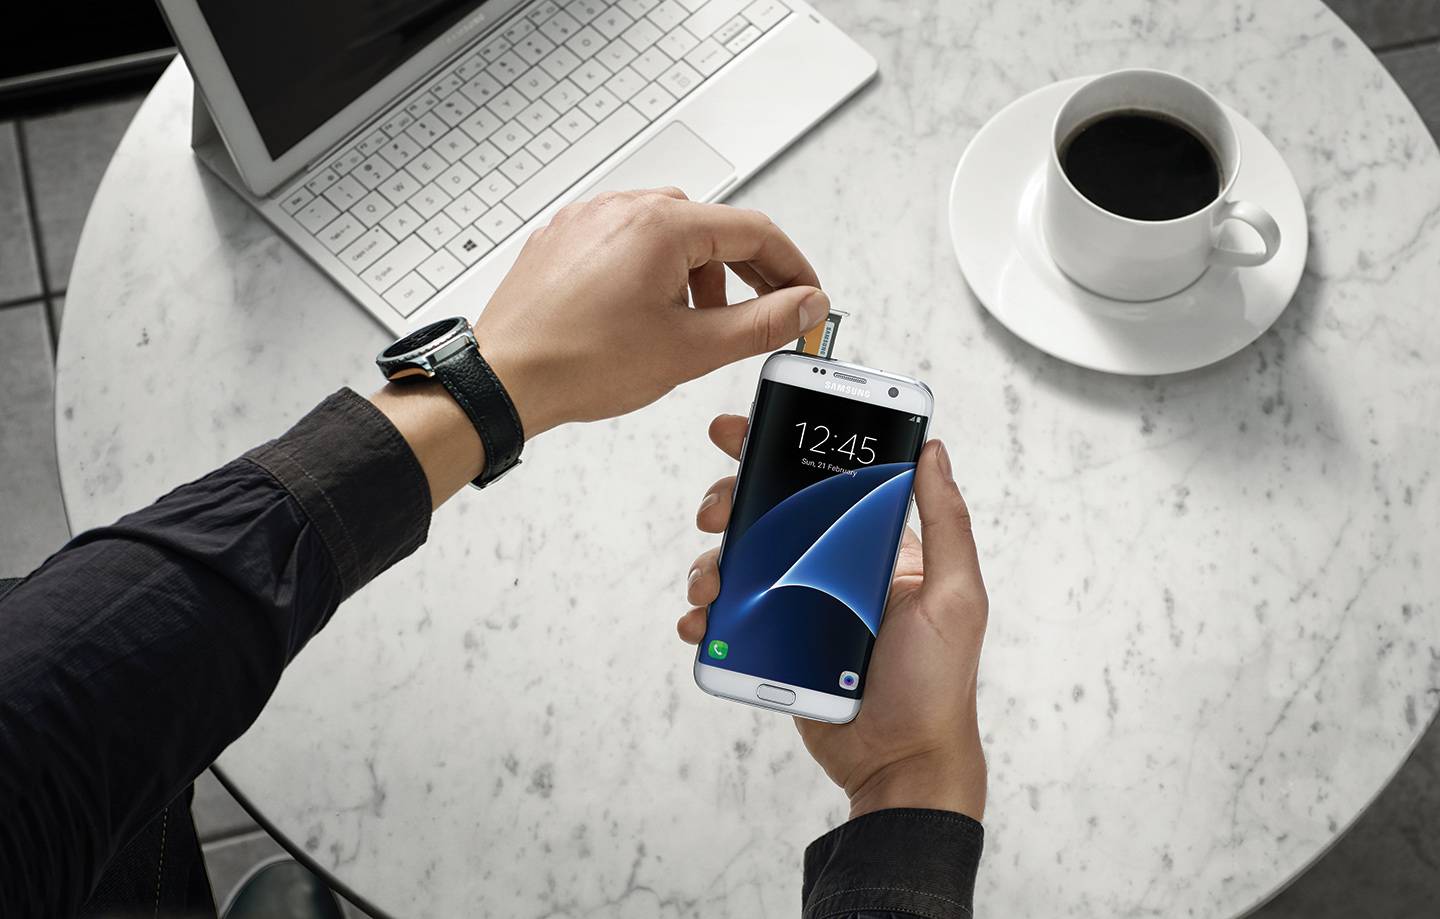 Je li bolje kupiti Galaxy S7 odmah ili pričekati iPhone 7?